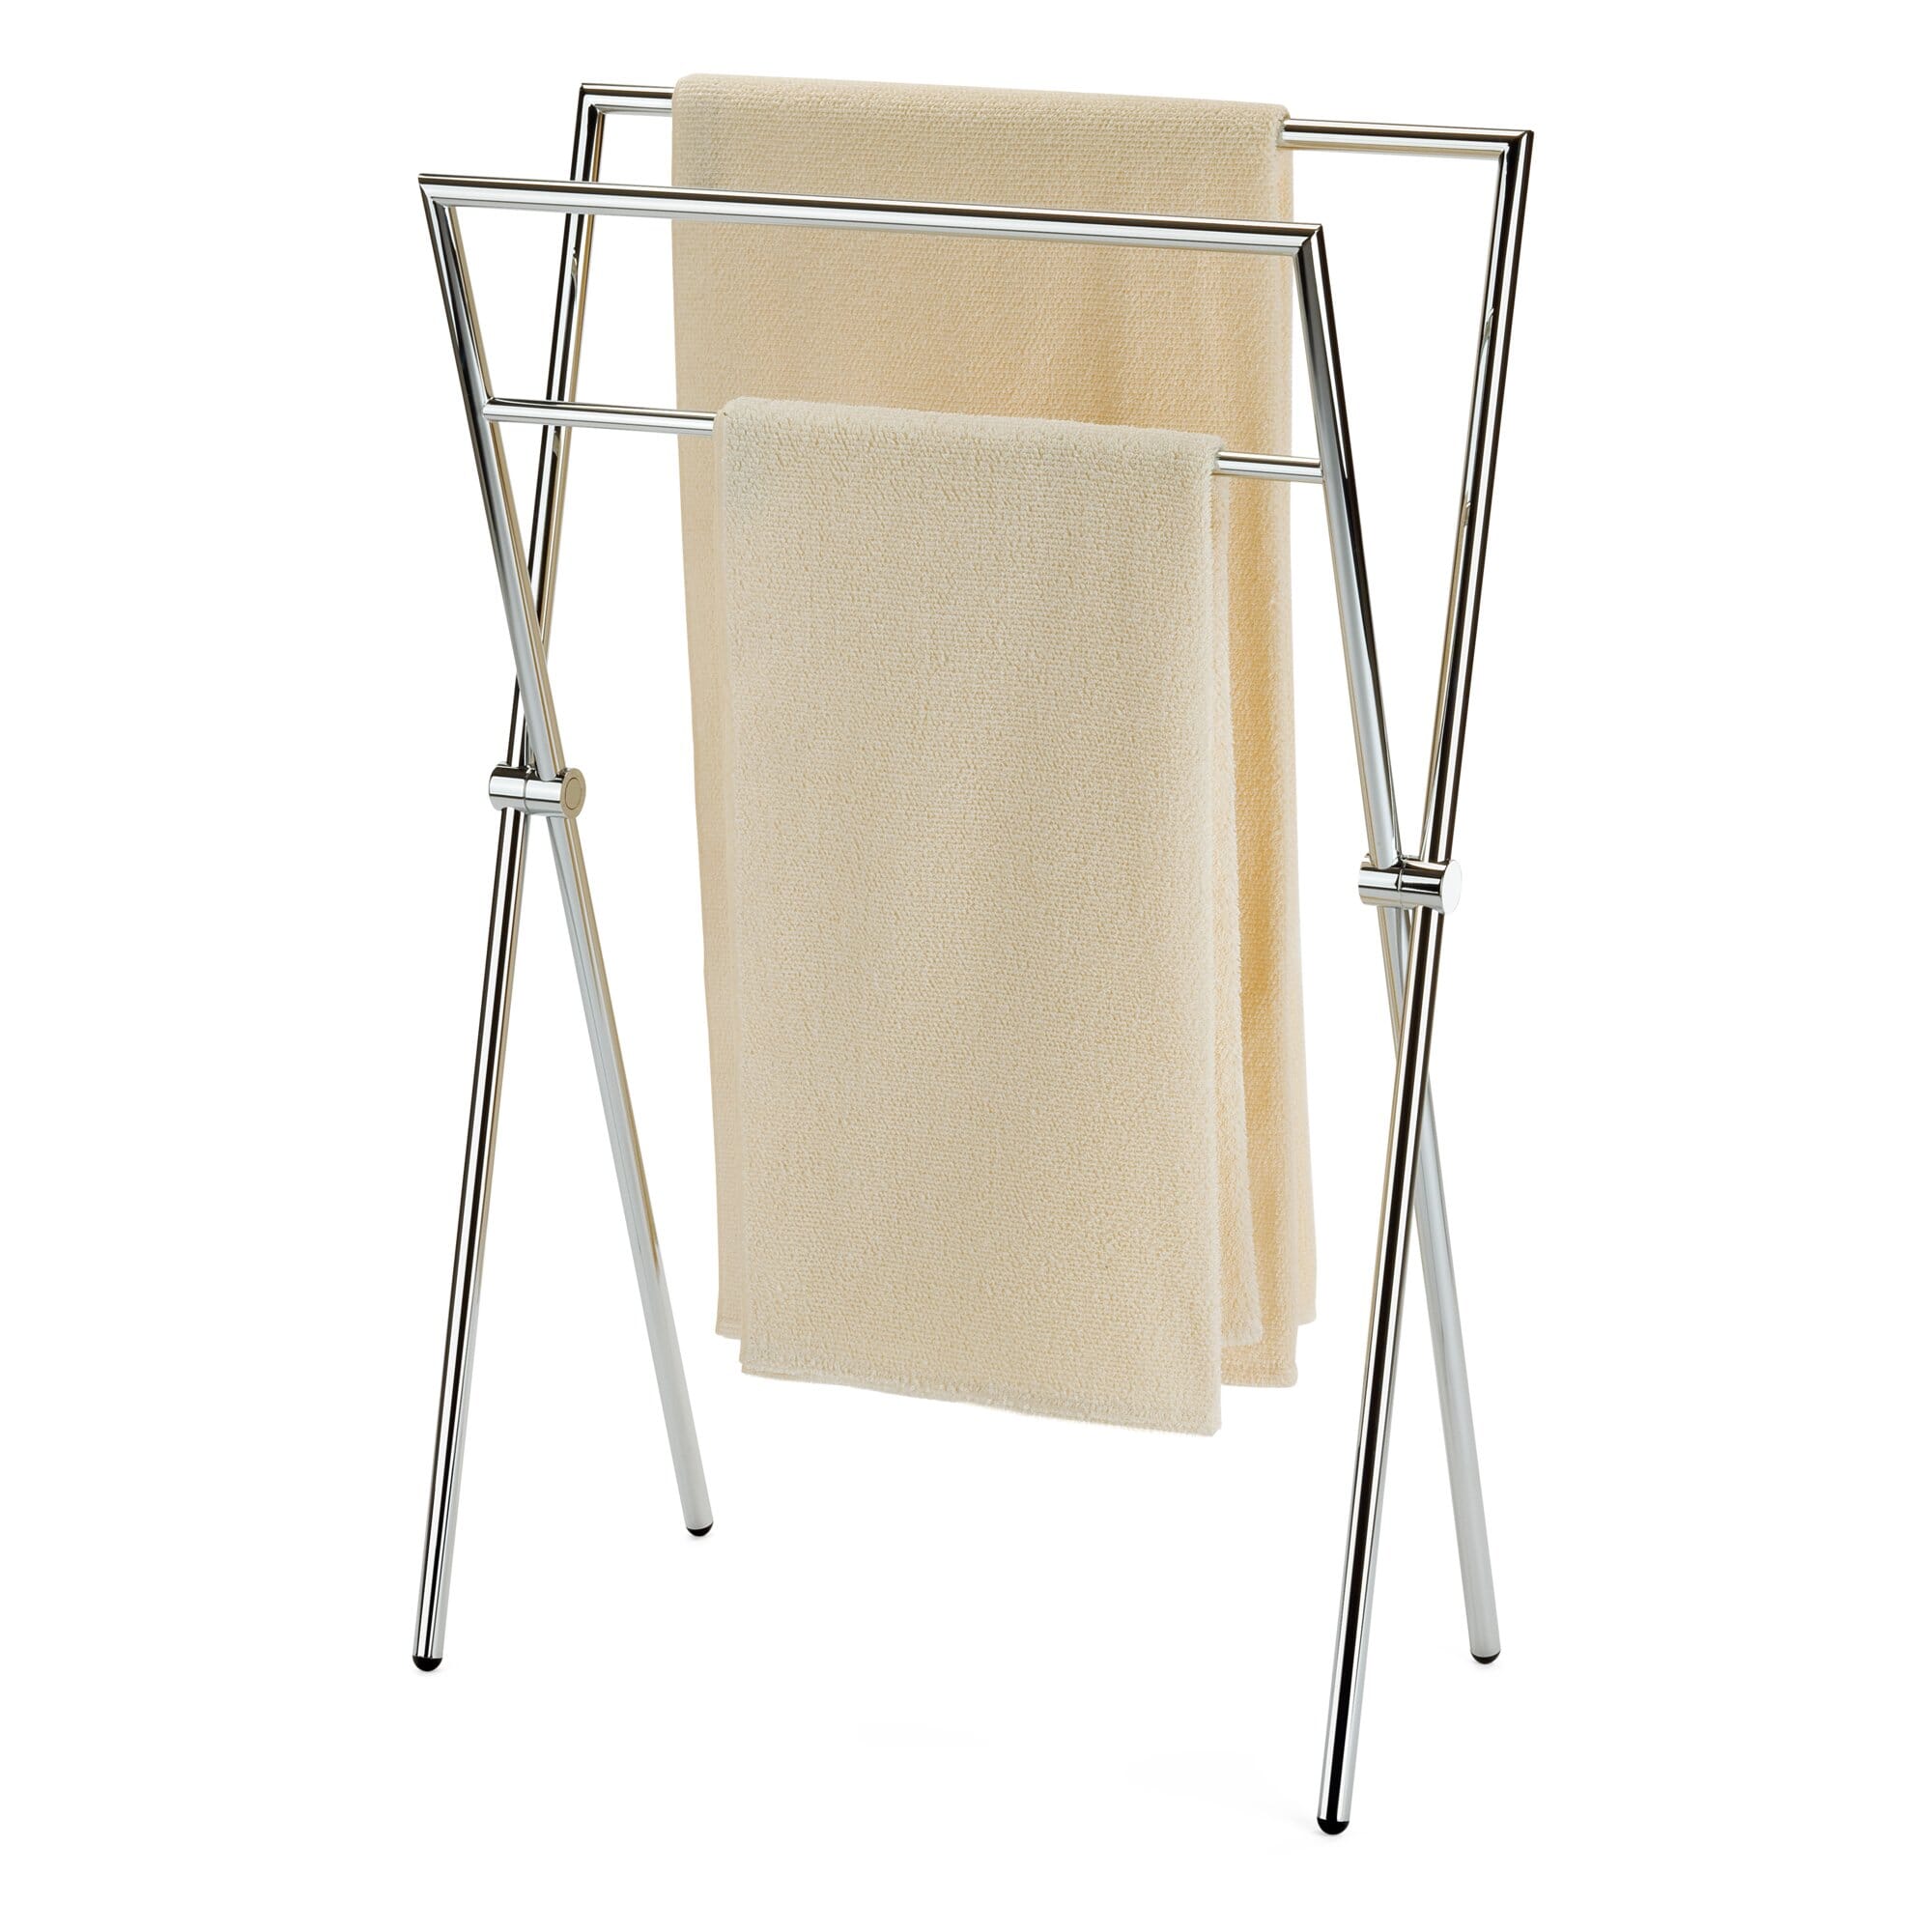 https://assets.manufactum.de/p/019/019798/19798_02.jpg/towel-rack-brass-freestanding.jpg